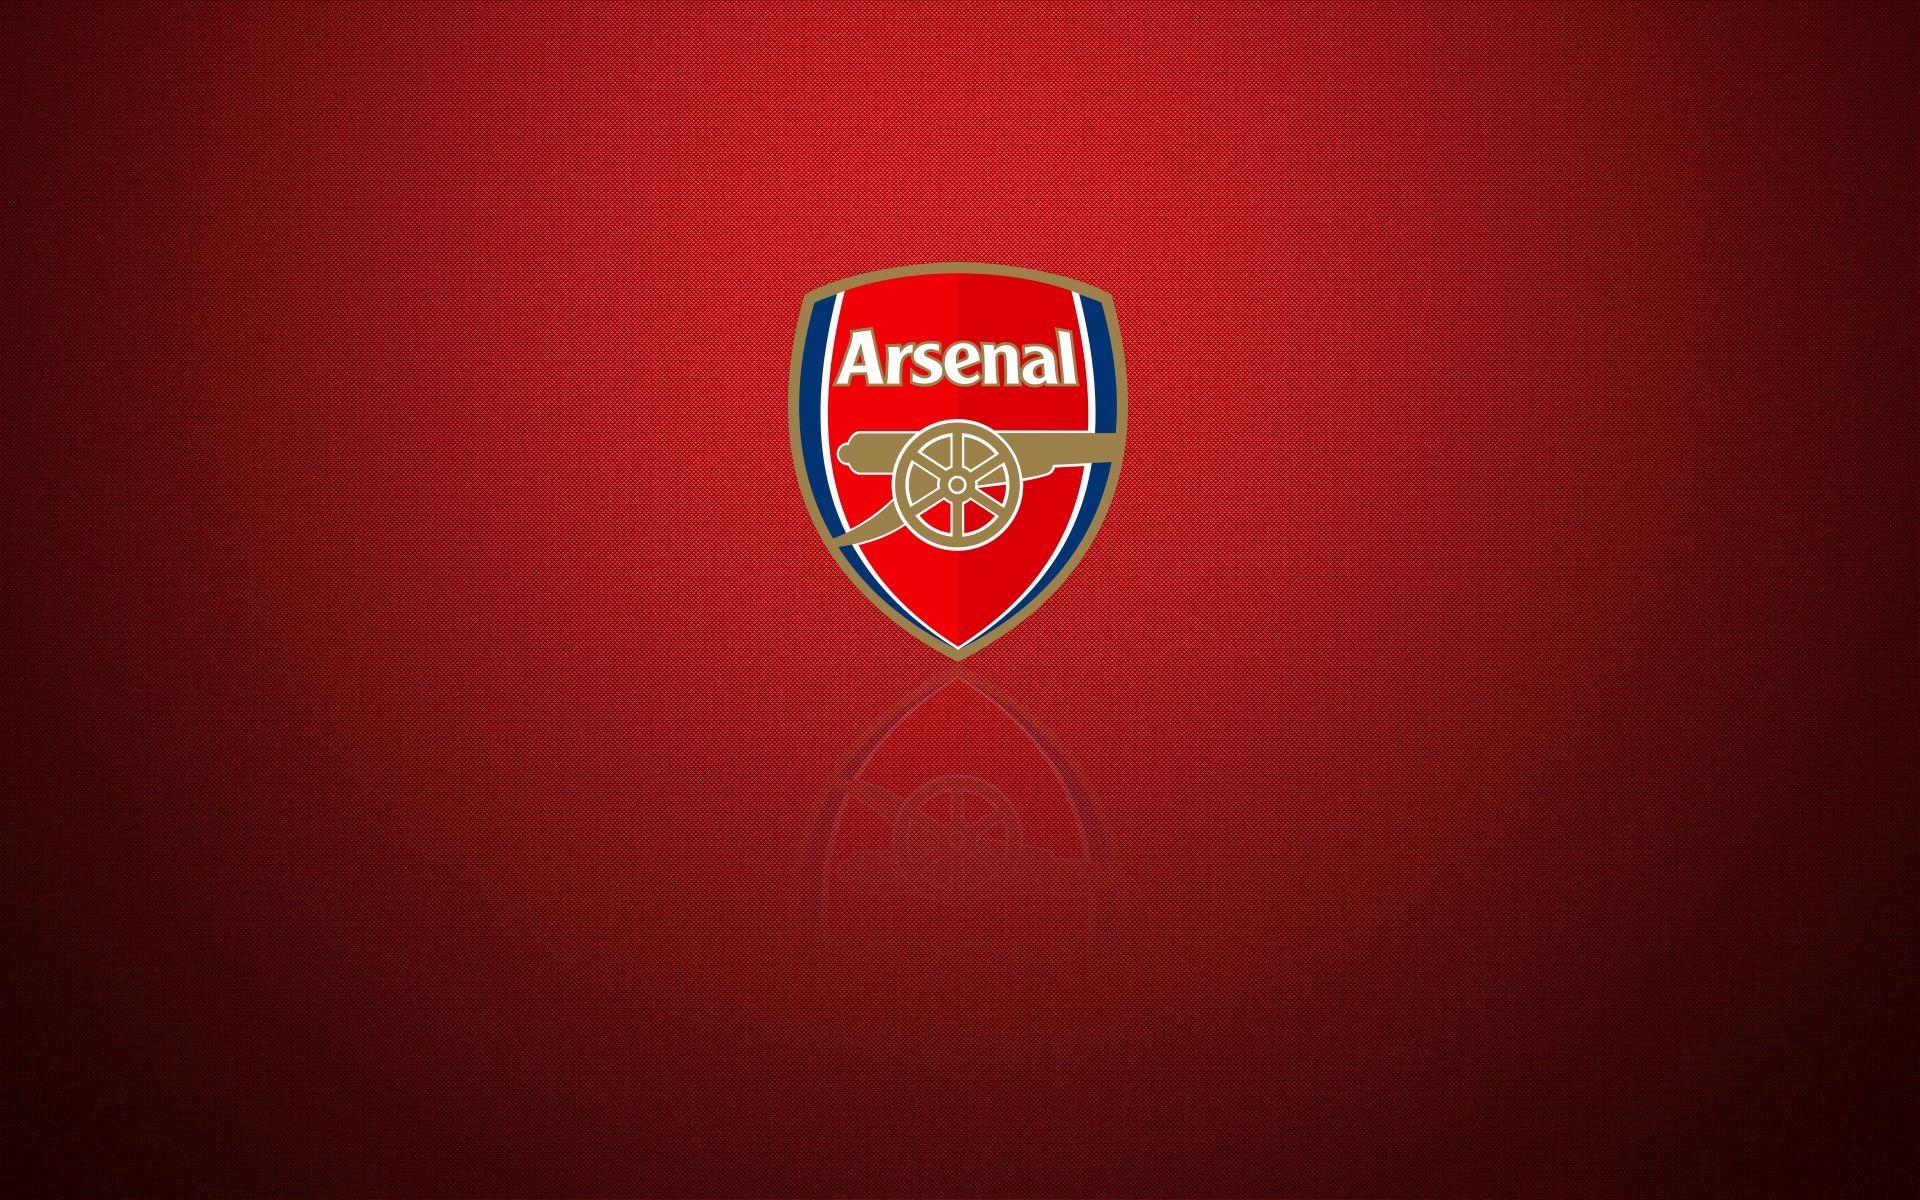 Arsenal Logo - Arsenal – Logos Download